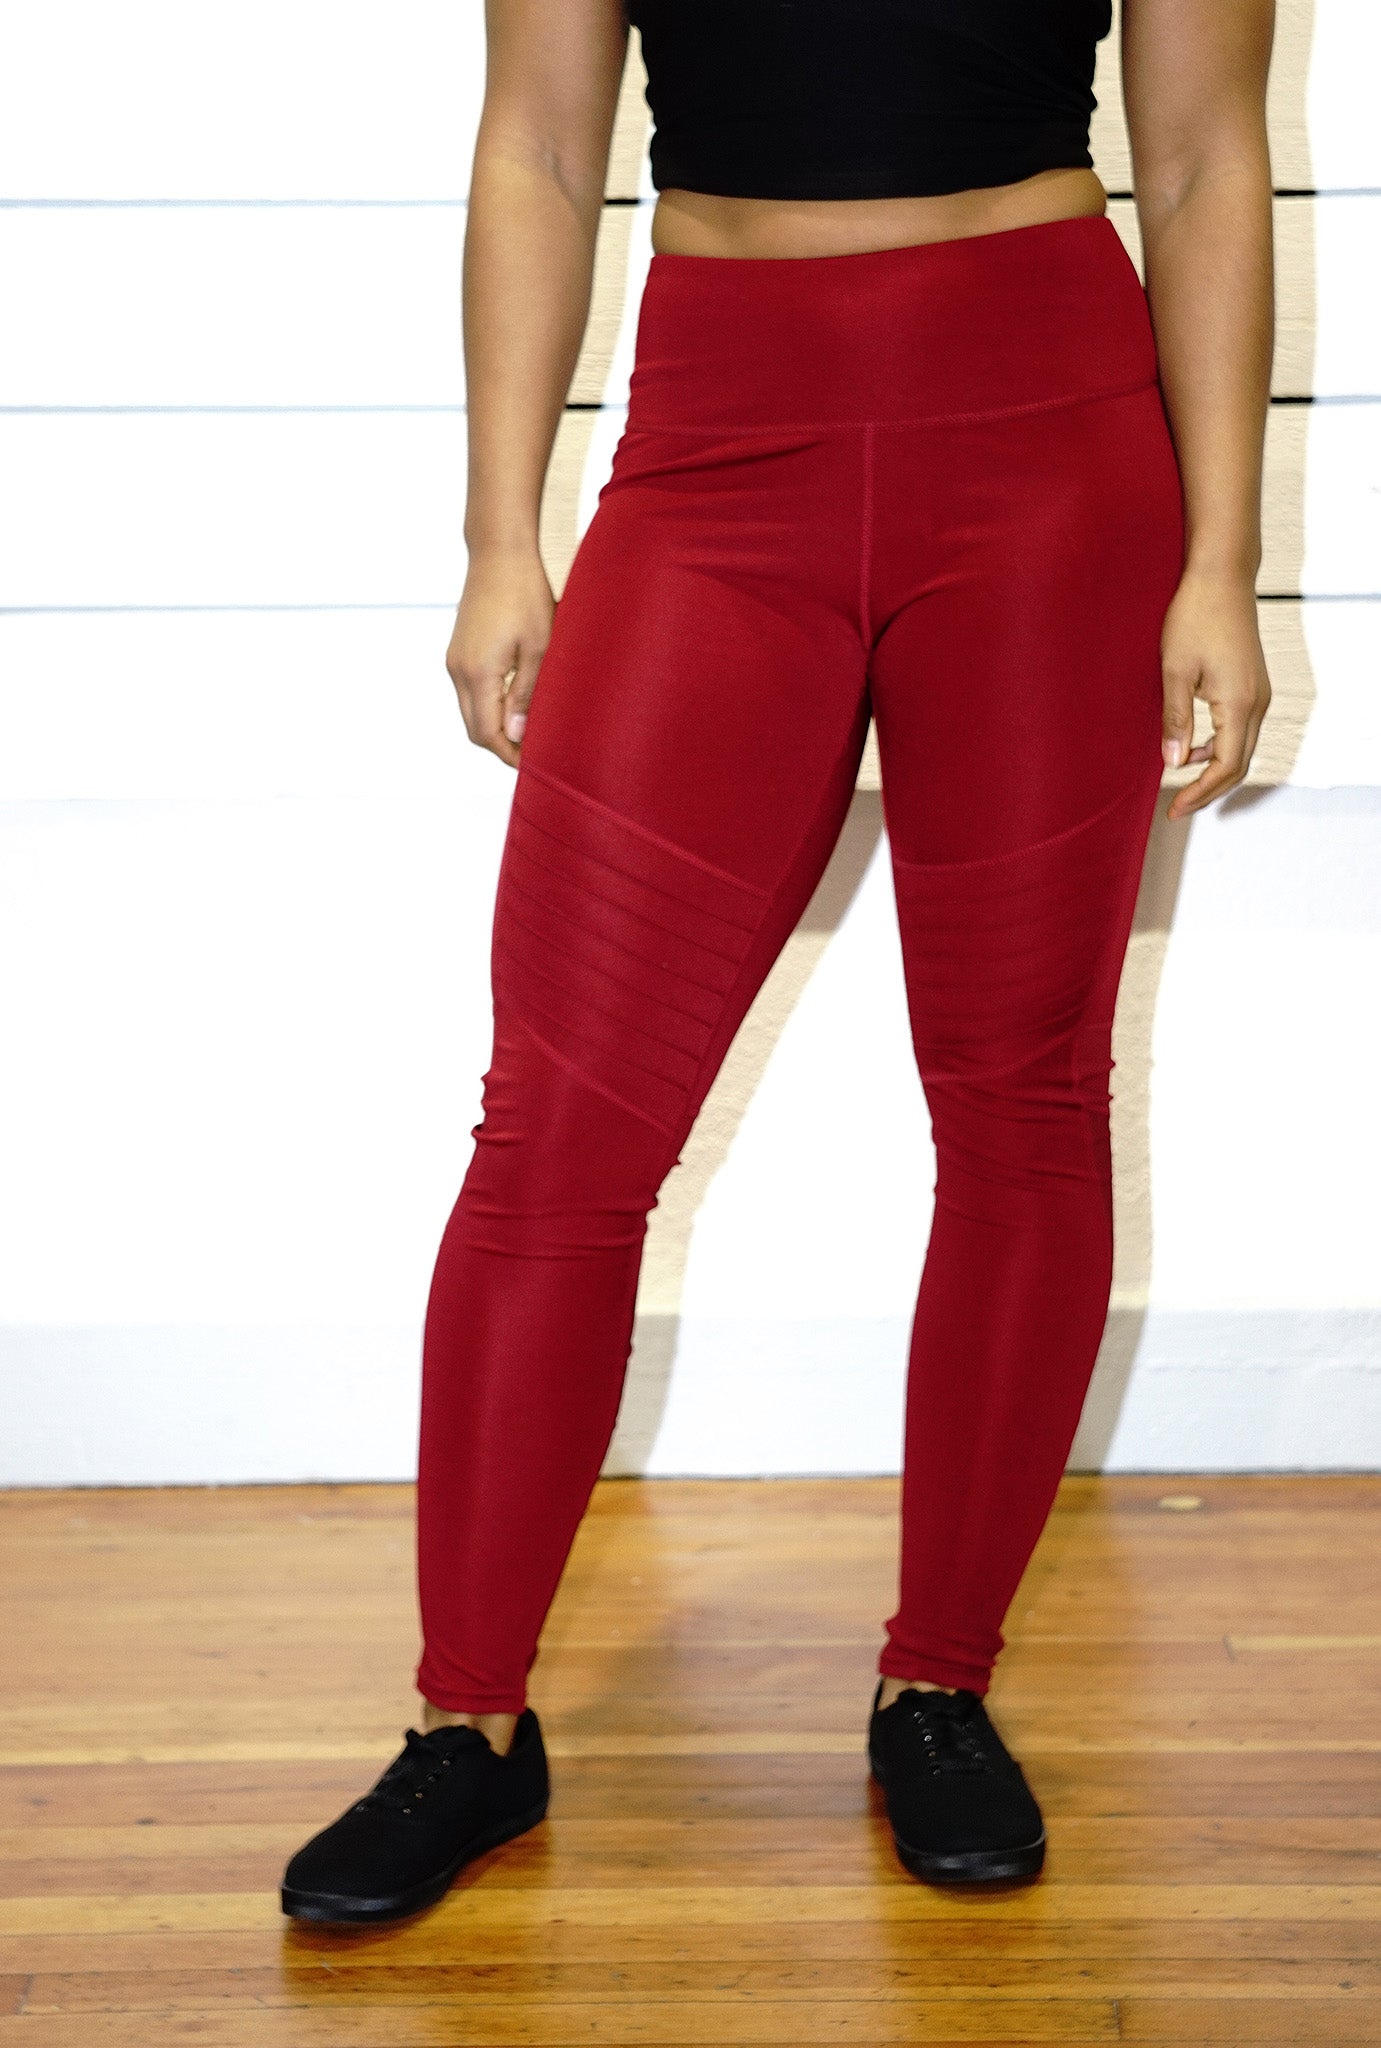 Crimson leggings